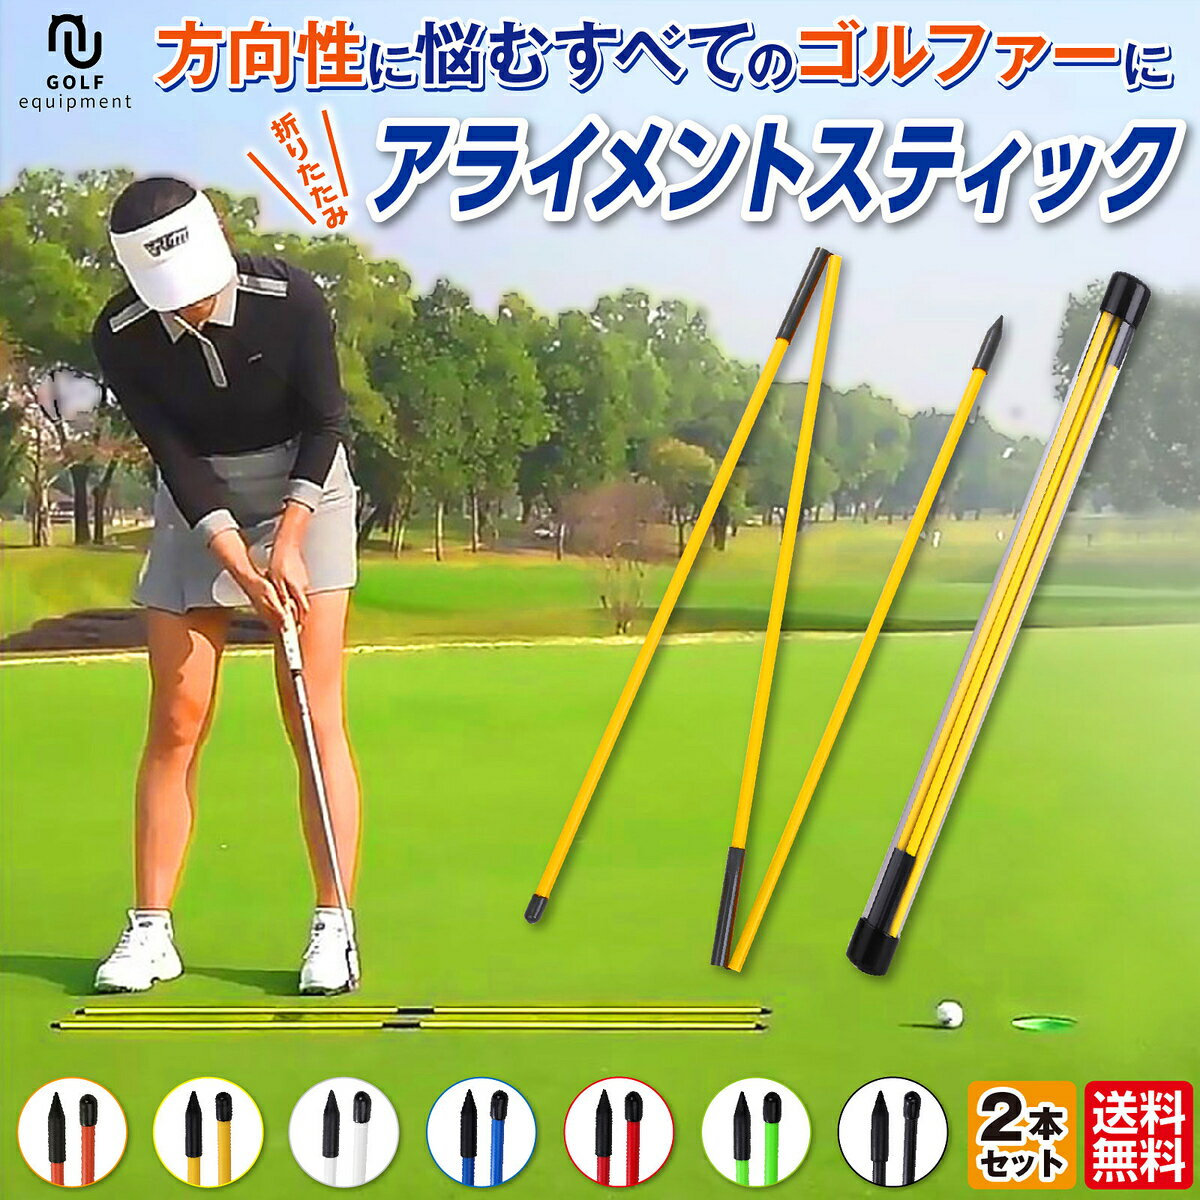 フジクラ 藤倉 VENTUS アライメントスティック セット スティック2本+専用カバー1個セット Fujikura ゴルフ 練習器具 日本仕様